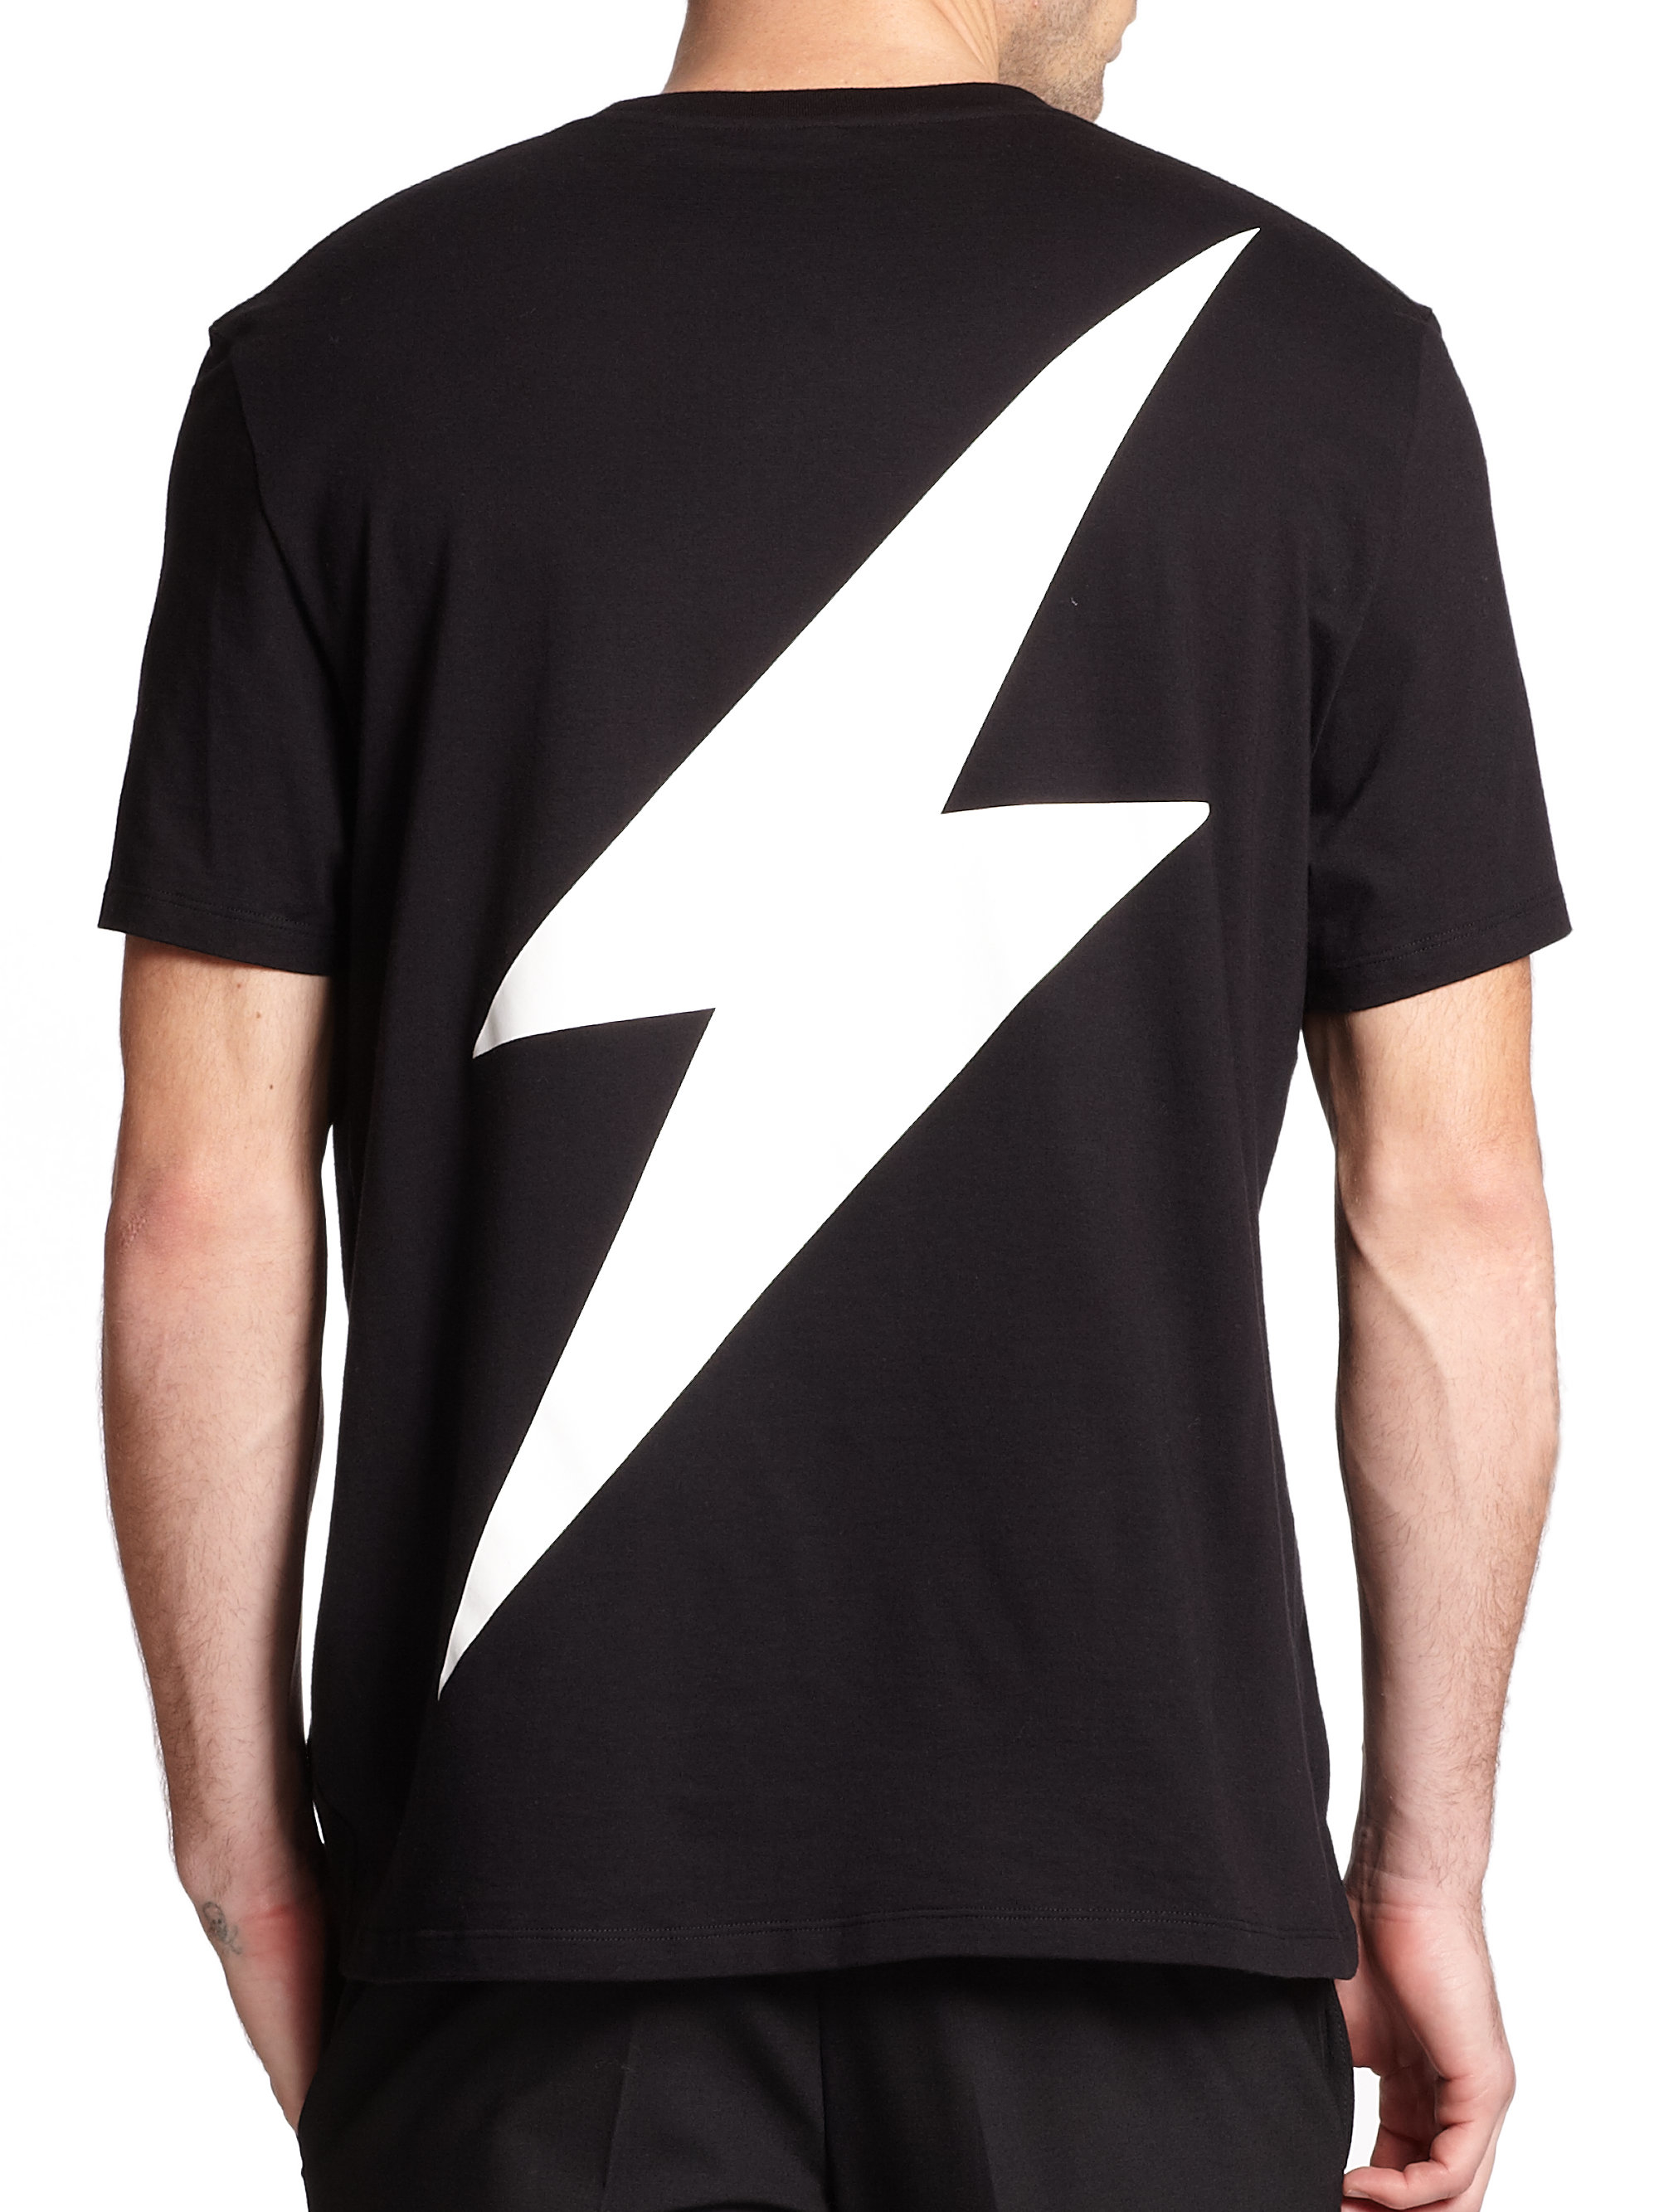 Neil Barrett Lightning Cotton T-shirt in Black for Men - Lyst